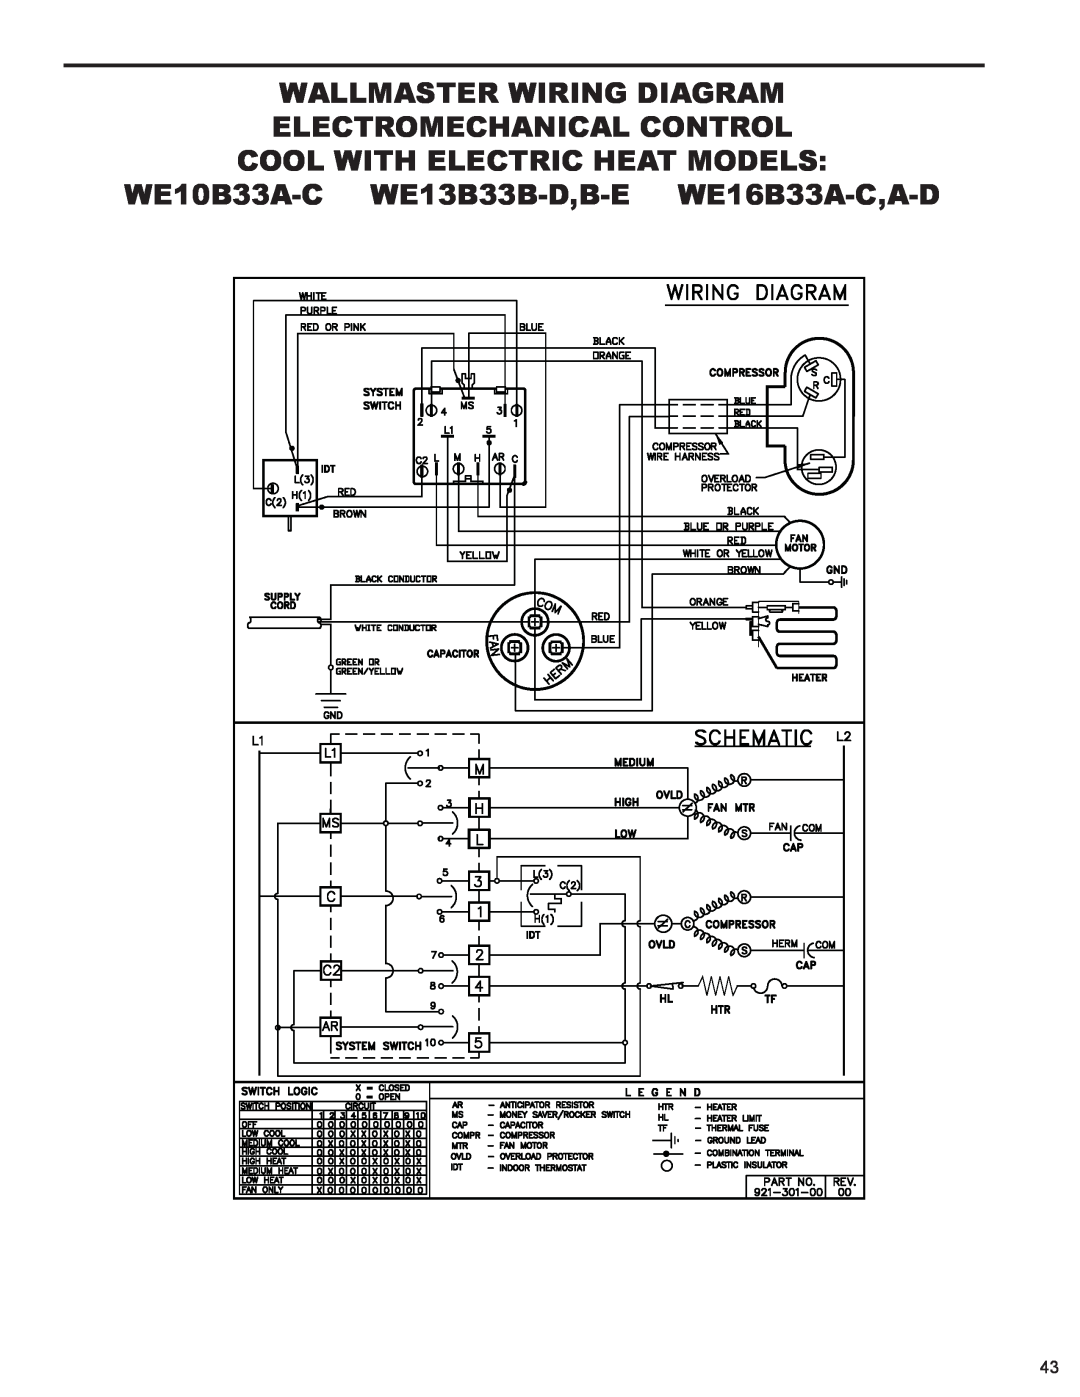 Friedrich 2009, 2008 Wallmaster Wiring Diagram, Electromechanical Control, WE10B33A-C WE13B33B-D,B-E WE16B33A-C,A-D 